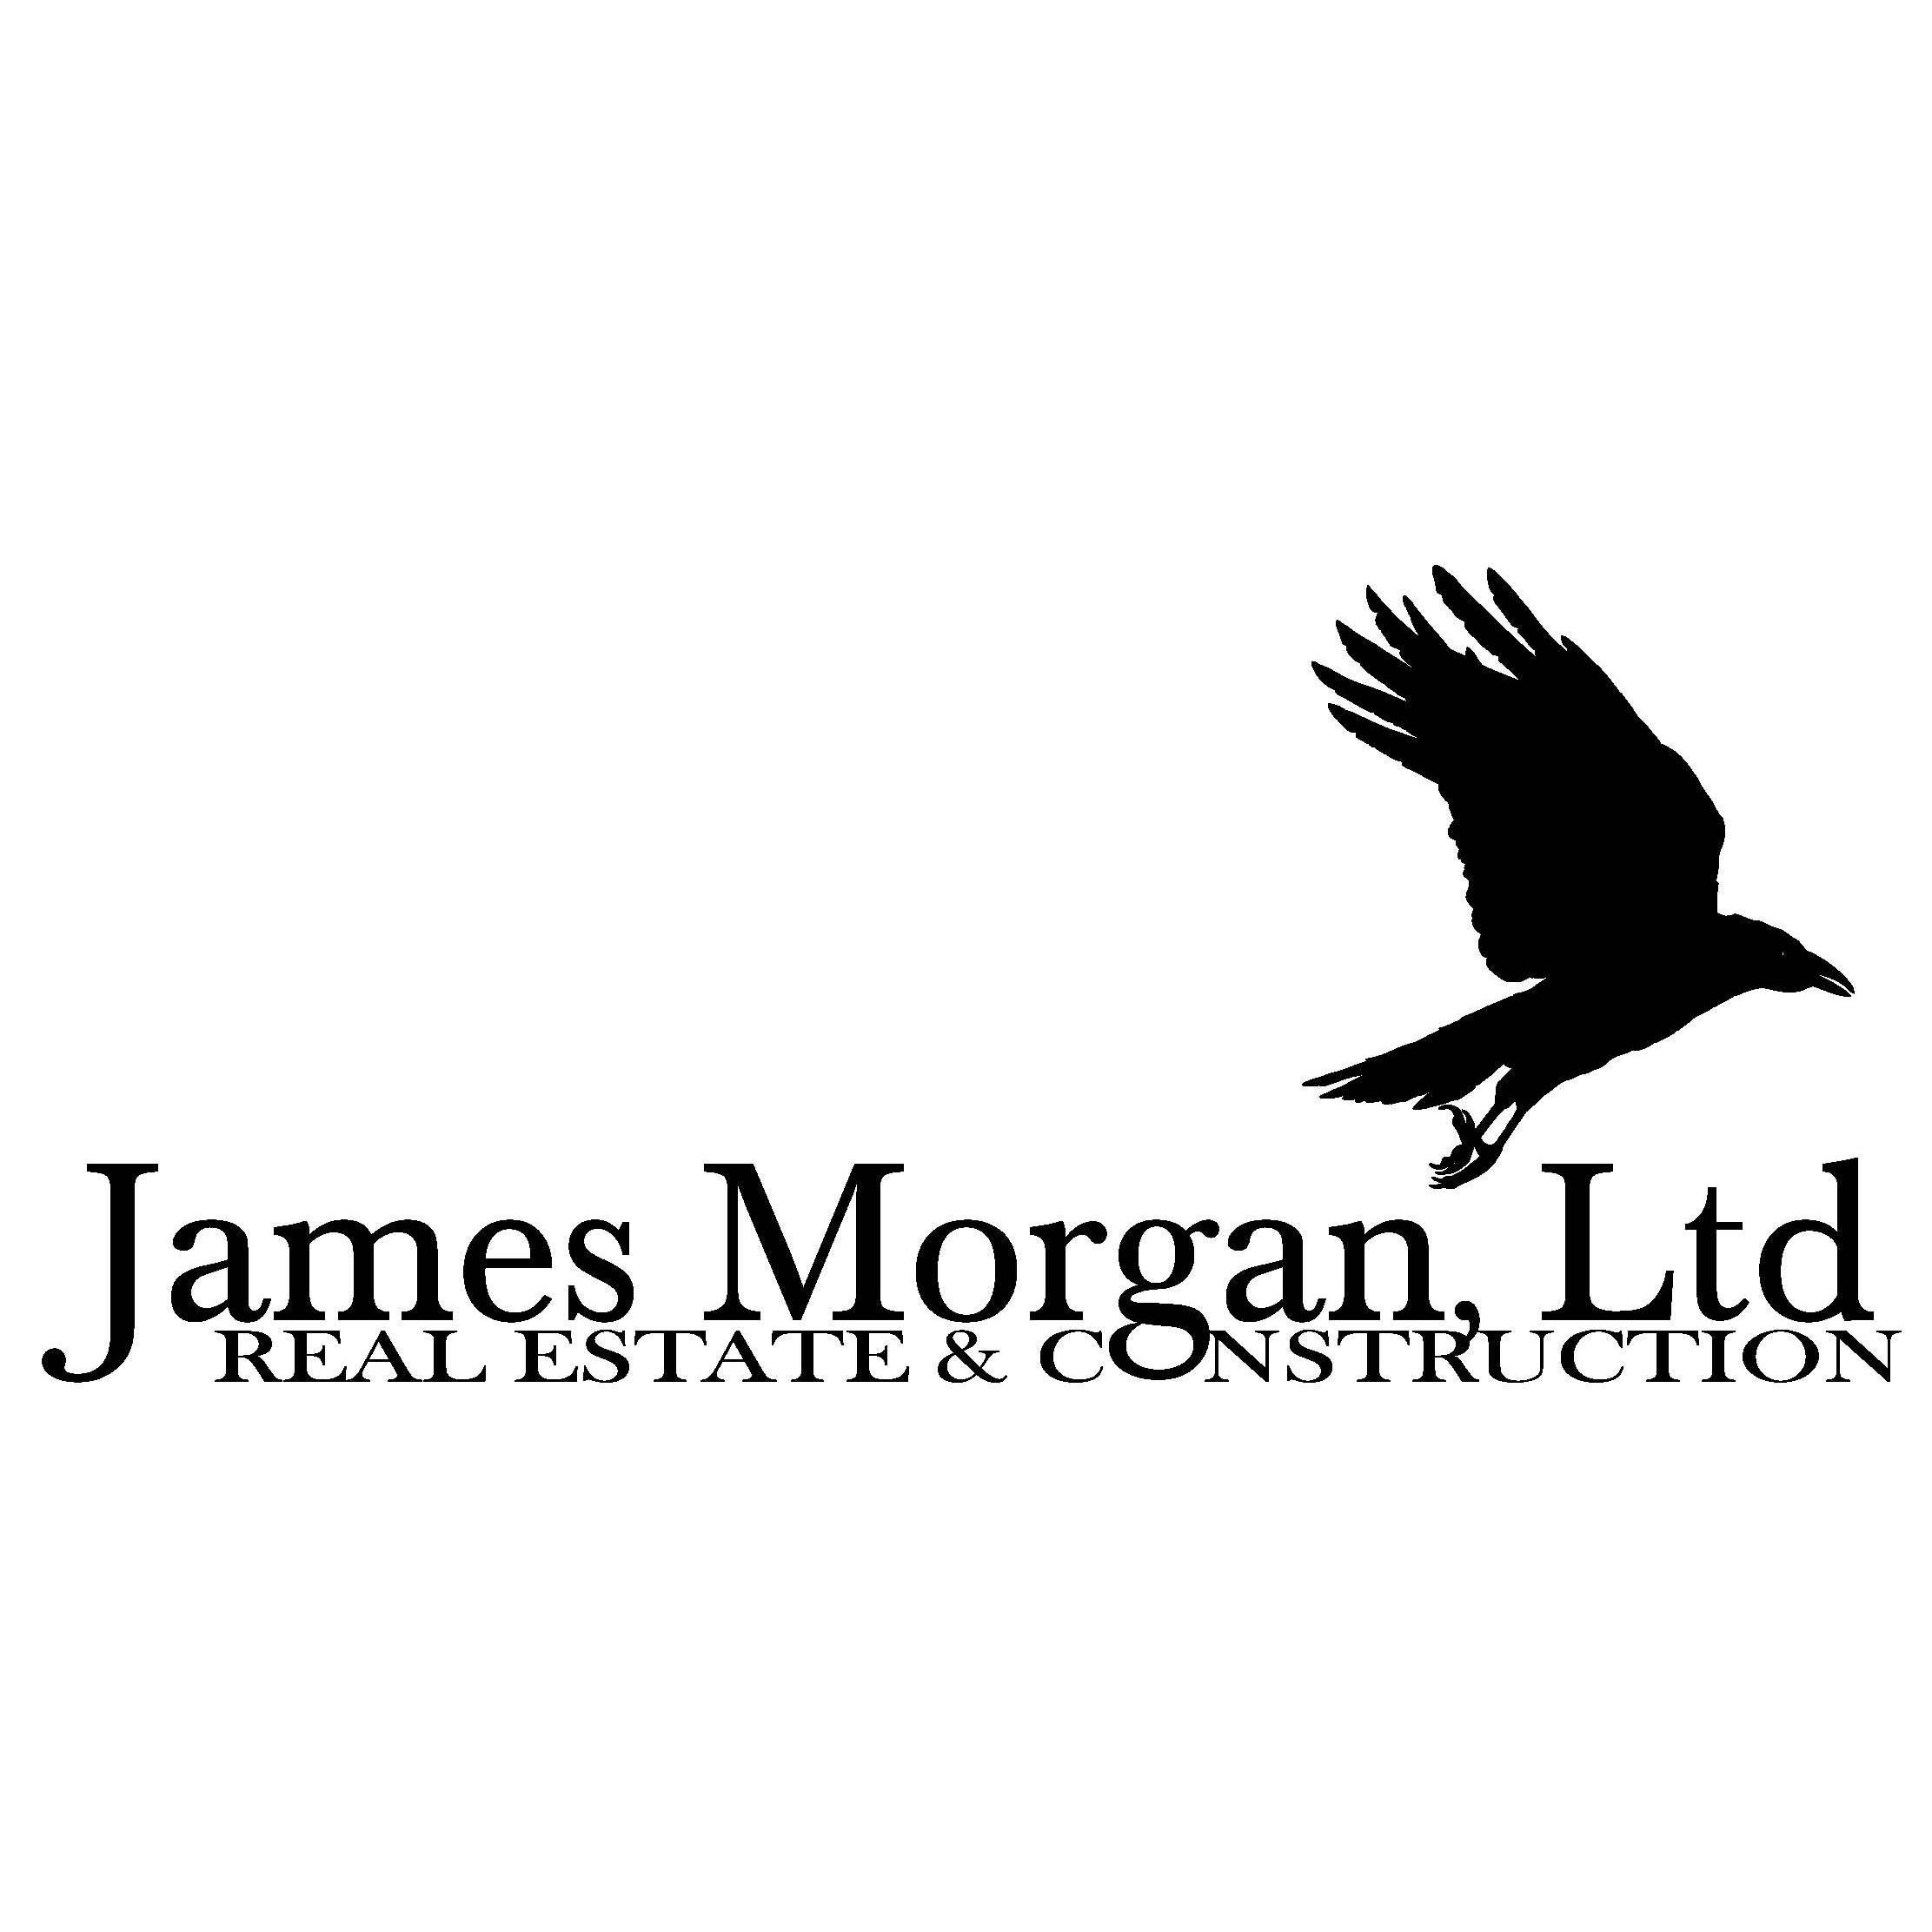 James Morgan Ltd.